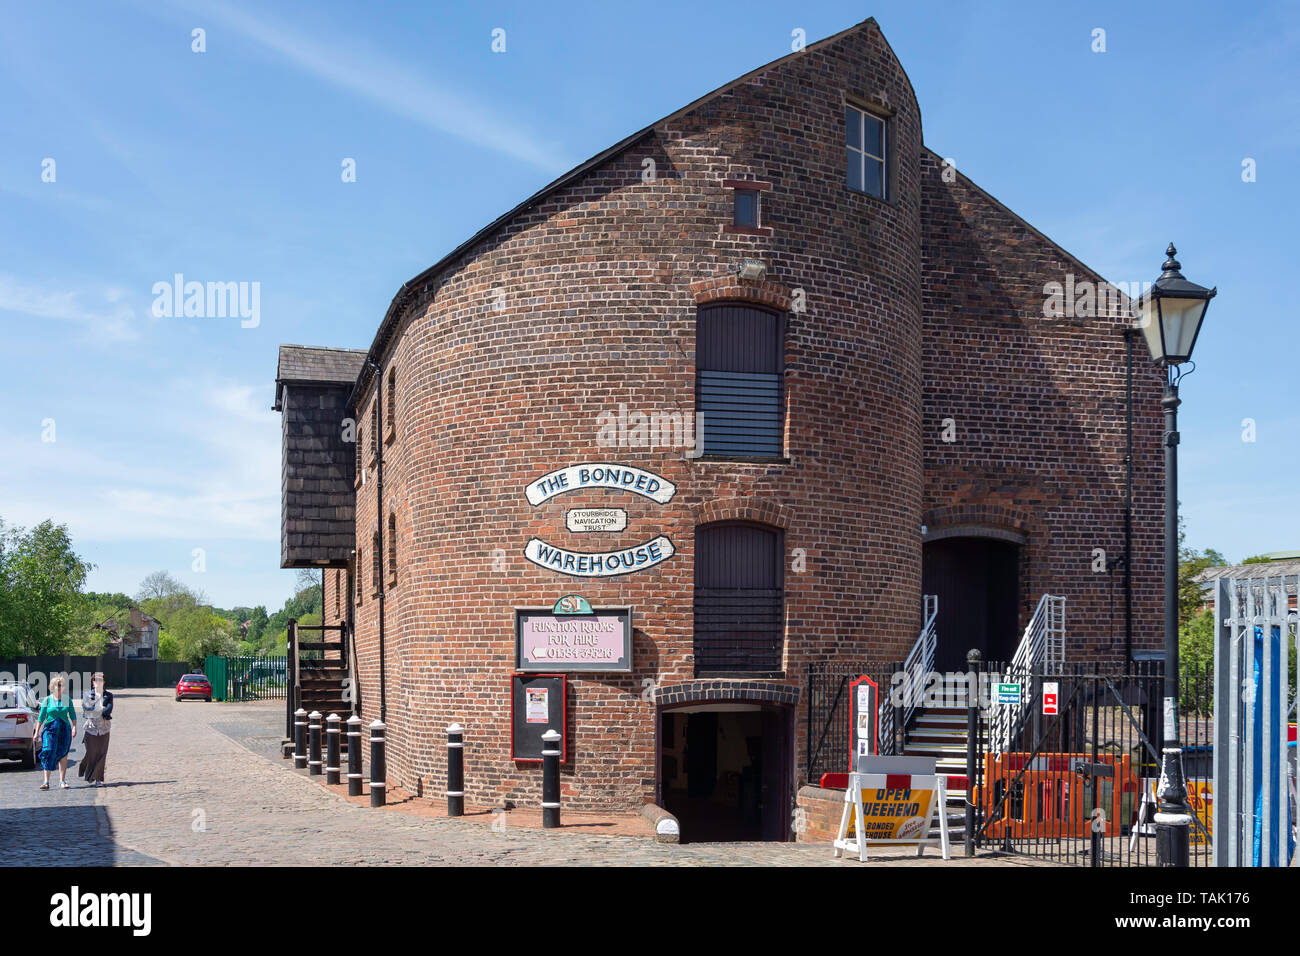 The Bonded Warehouse, Canal Street, Stourbridge, West Midlands, England, United Kingdom Stock Photo